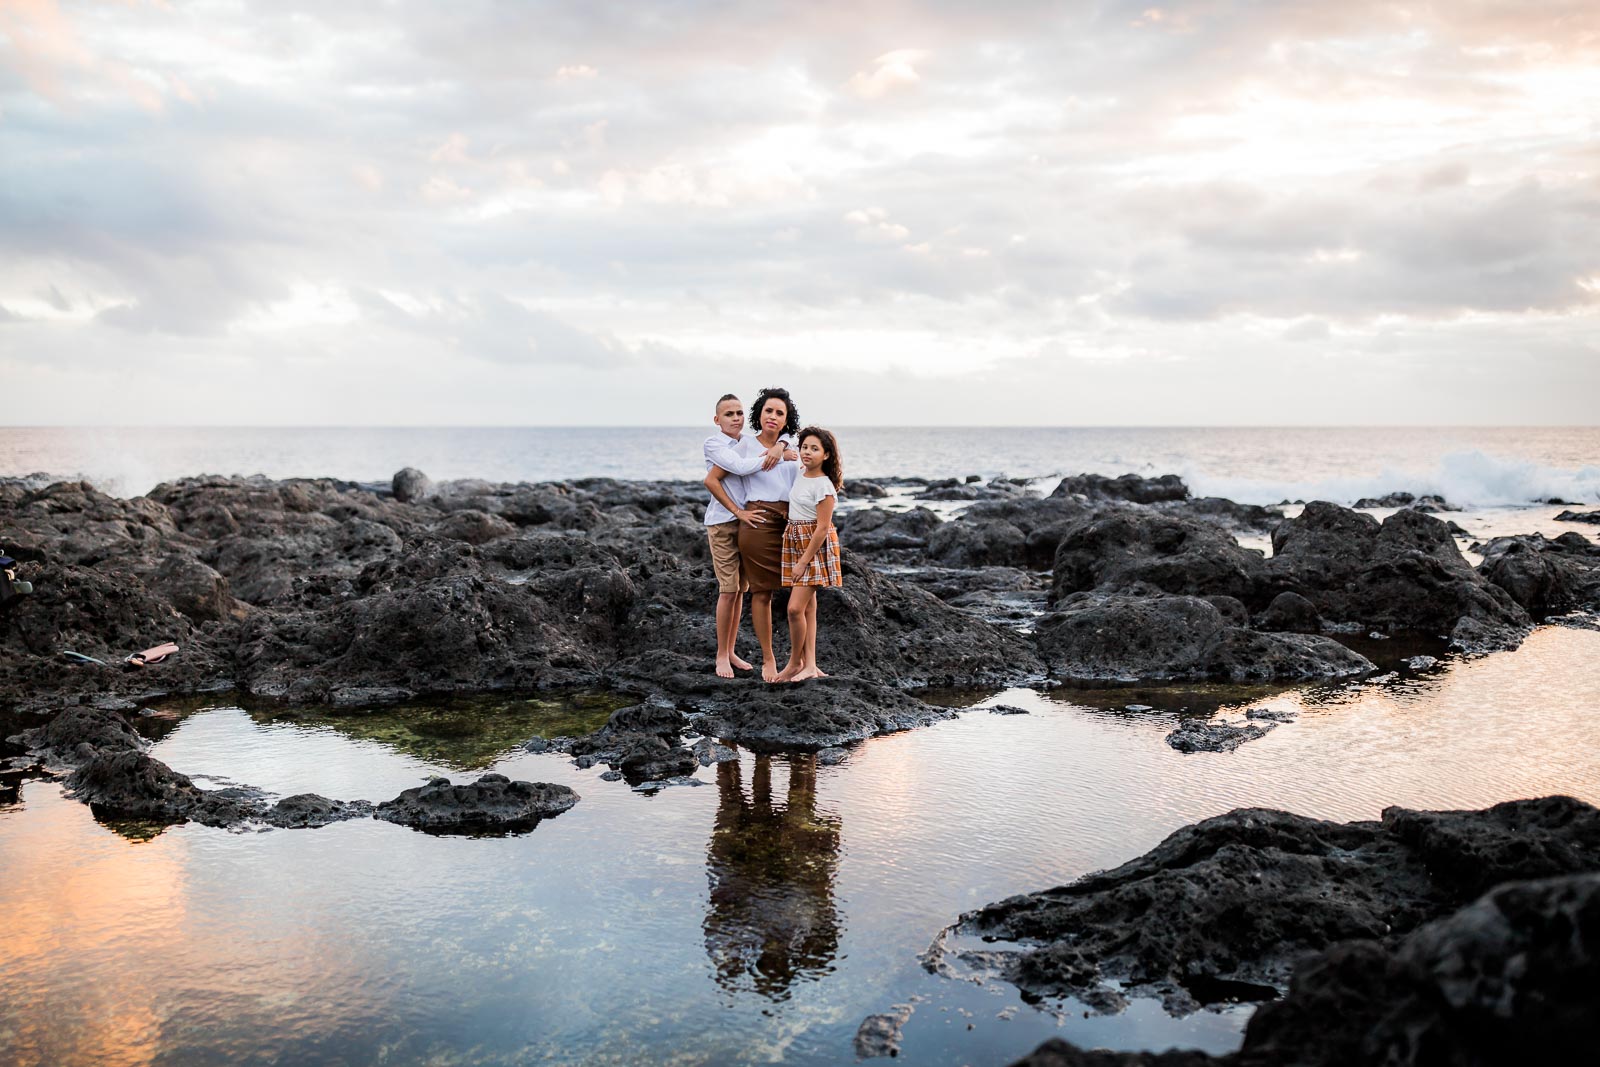 Les plus beaux lieux pour des séances photo à la Réunion 974, photo représentant une famille à la Pointe au Sel